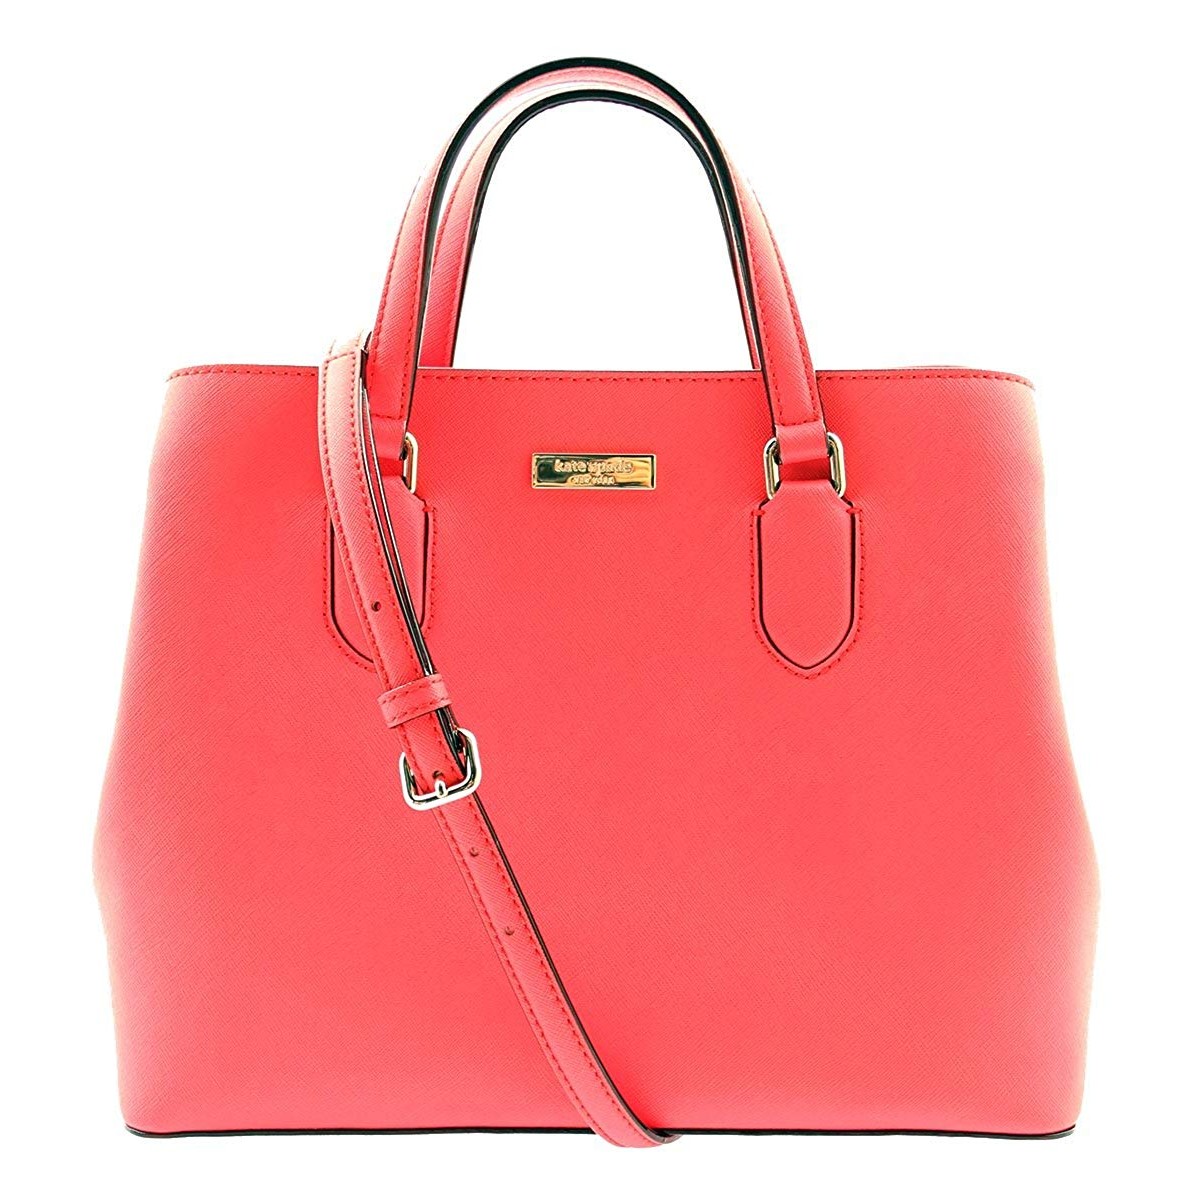 Buy KATE SPADE NEW YORK Laurel Way Evangelie Shoulder Bag in Crabred.  WKRU3930 Online at Lowest Price in Ubuy Qatar. 570321579